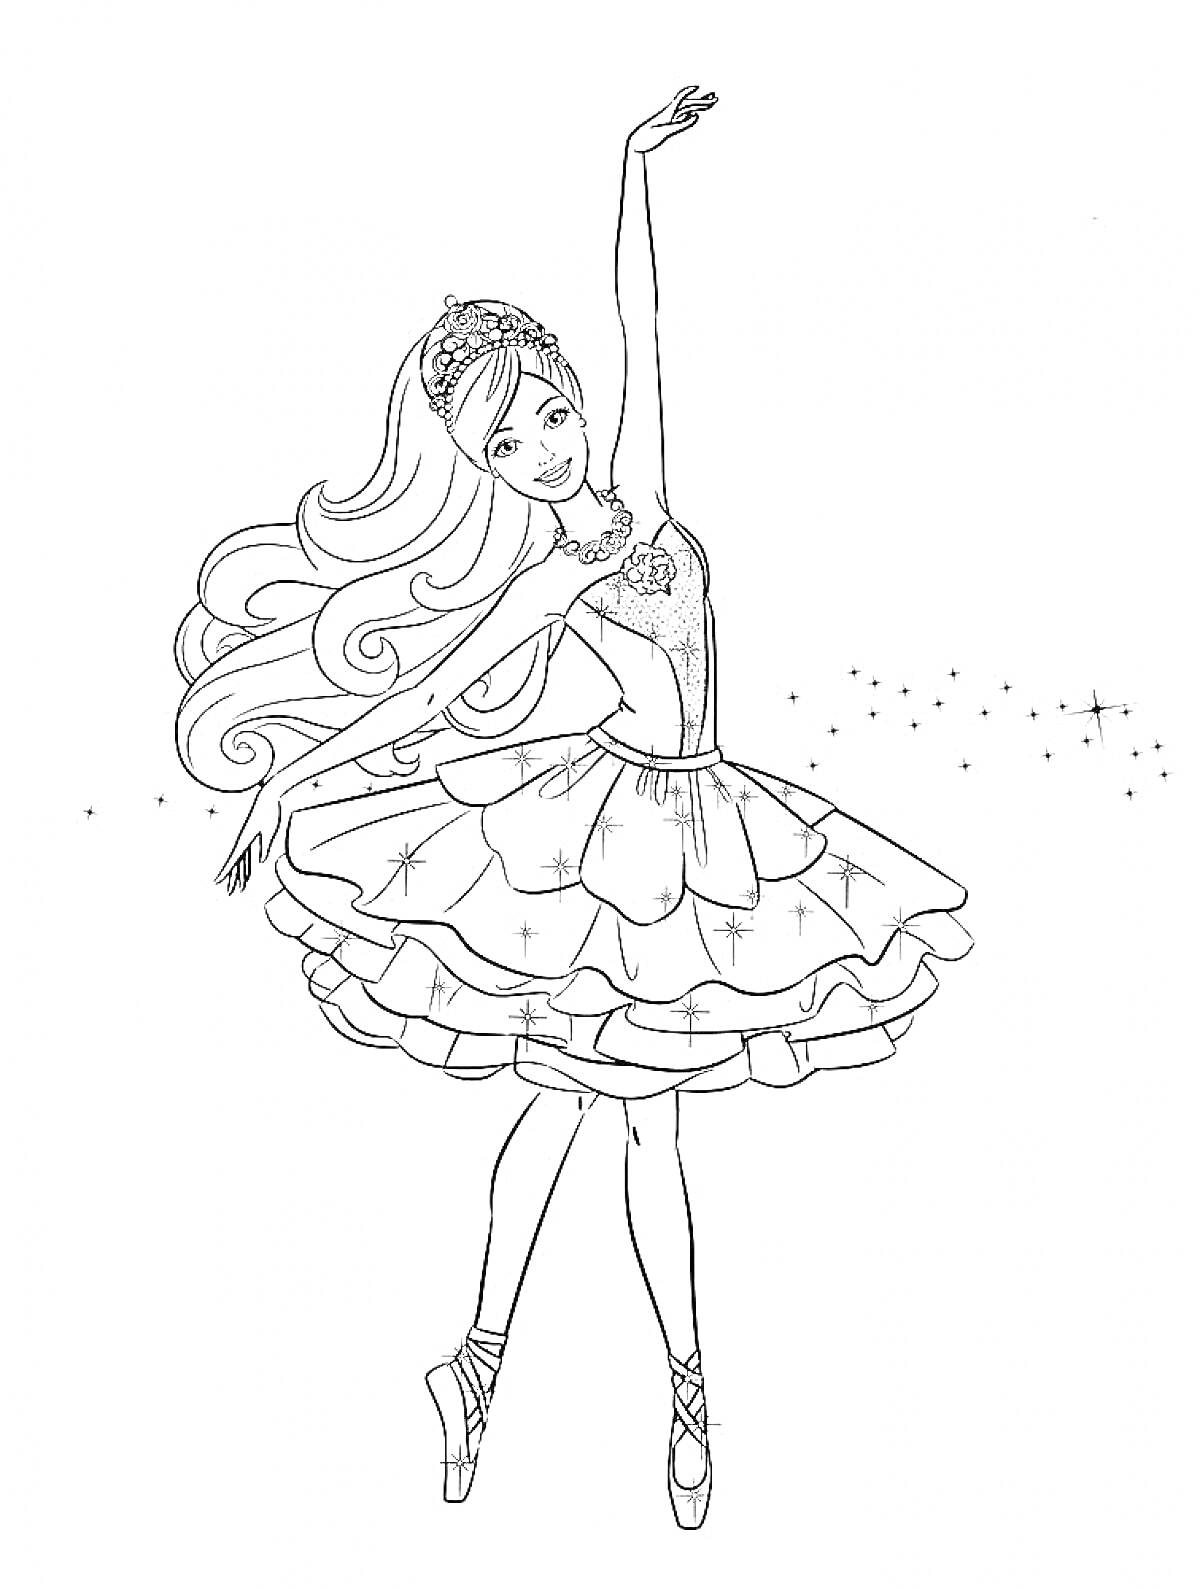 Раскраска Балерина в пышной юбке с диадемой и звездочками